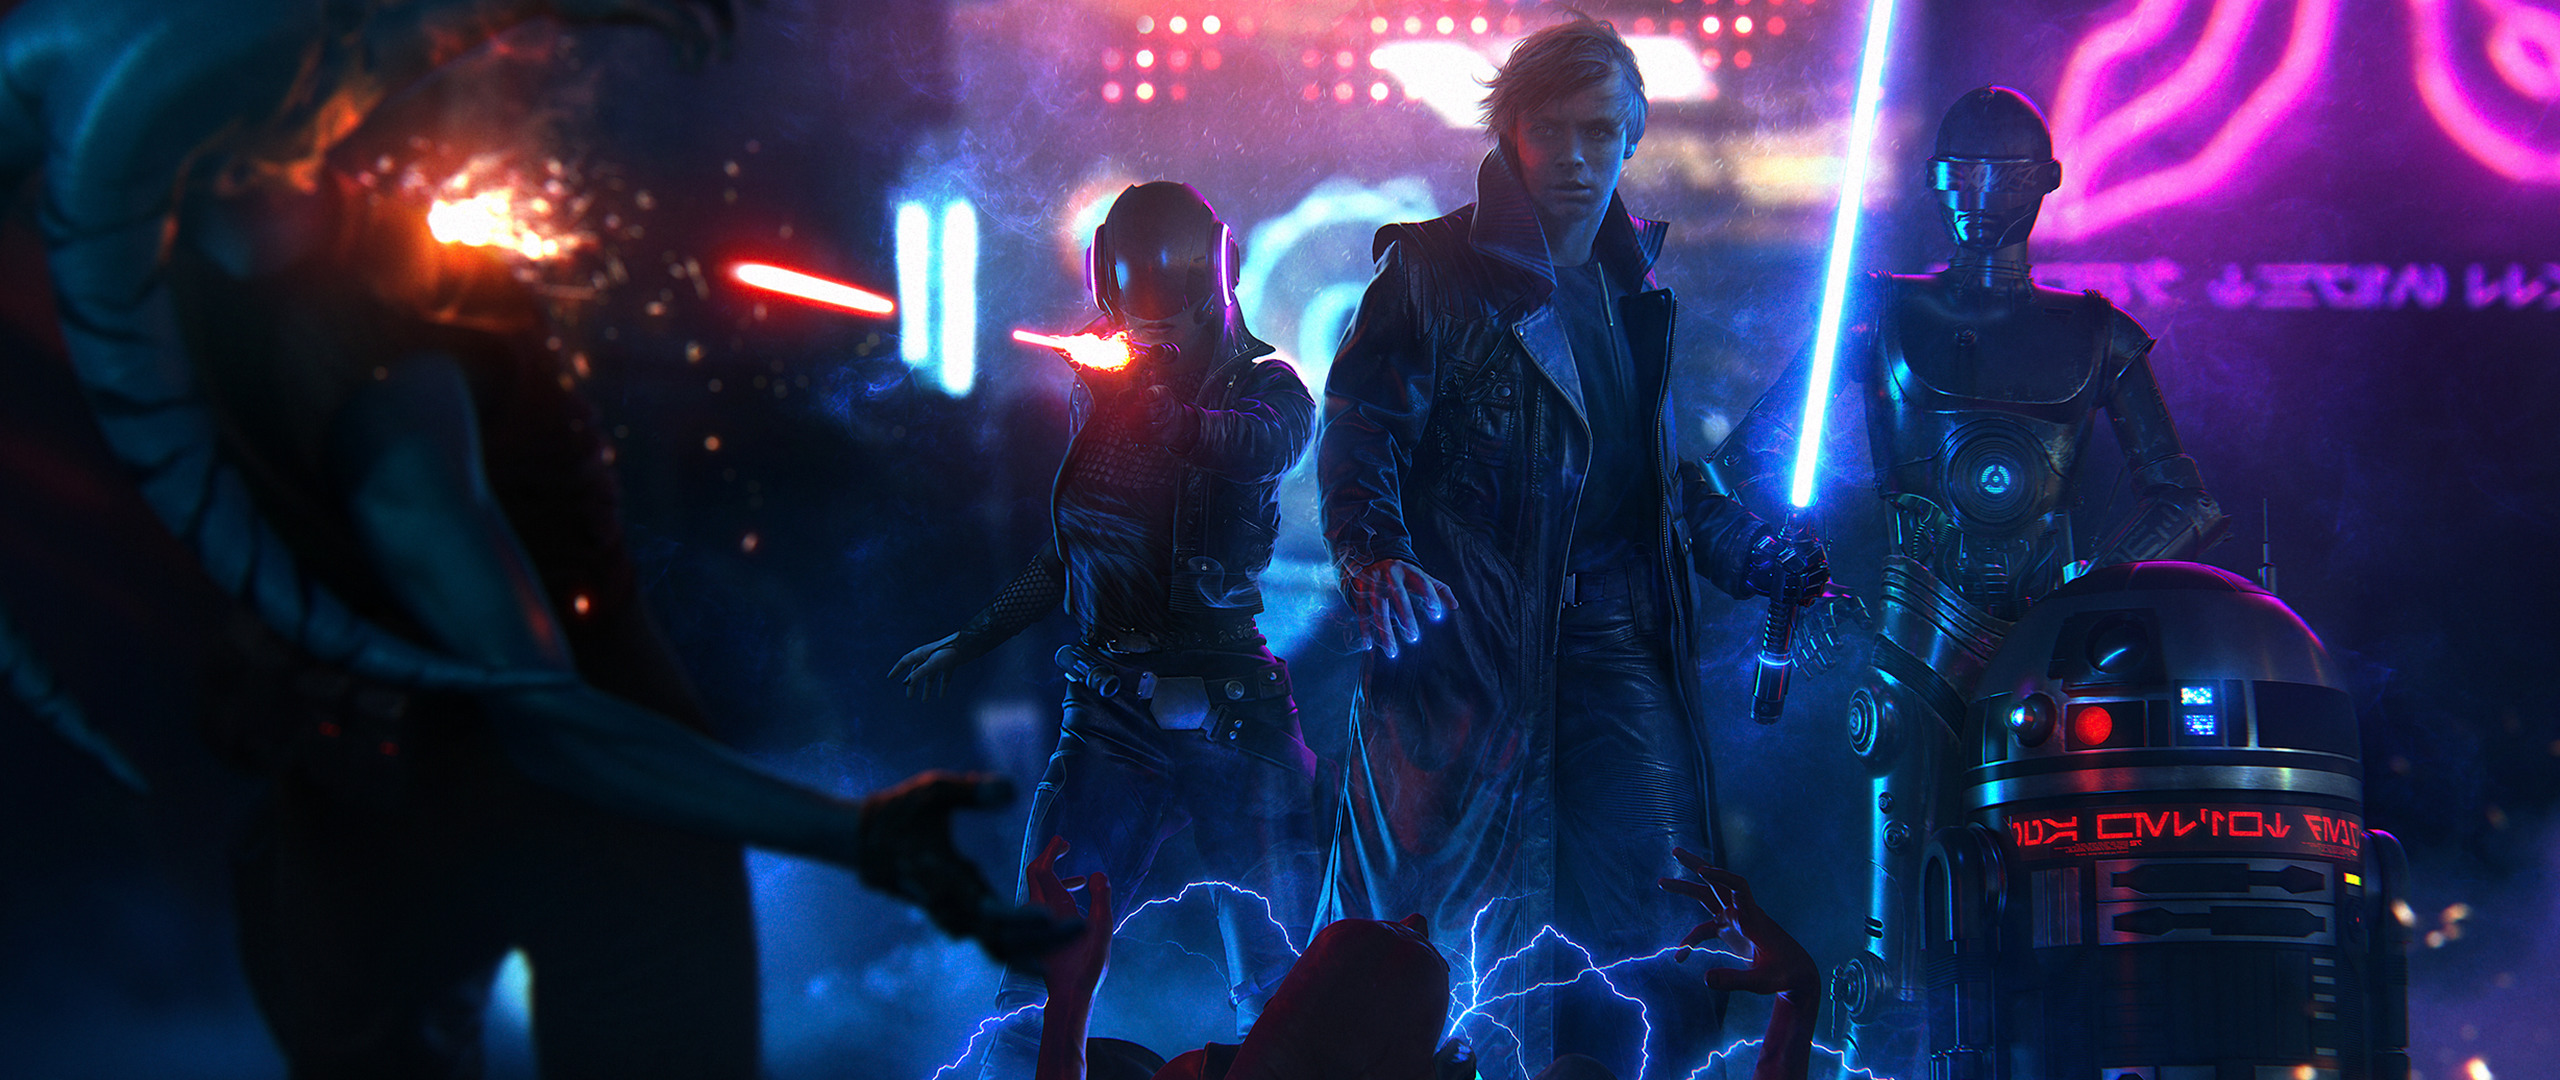 Luke Skywalker, Star Wars, Cyberpunk, Lightsaber, Ultrawide Wallpaper